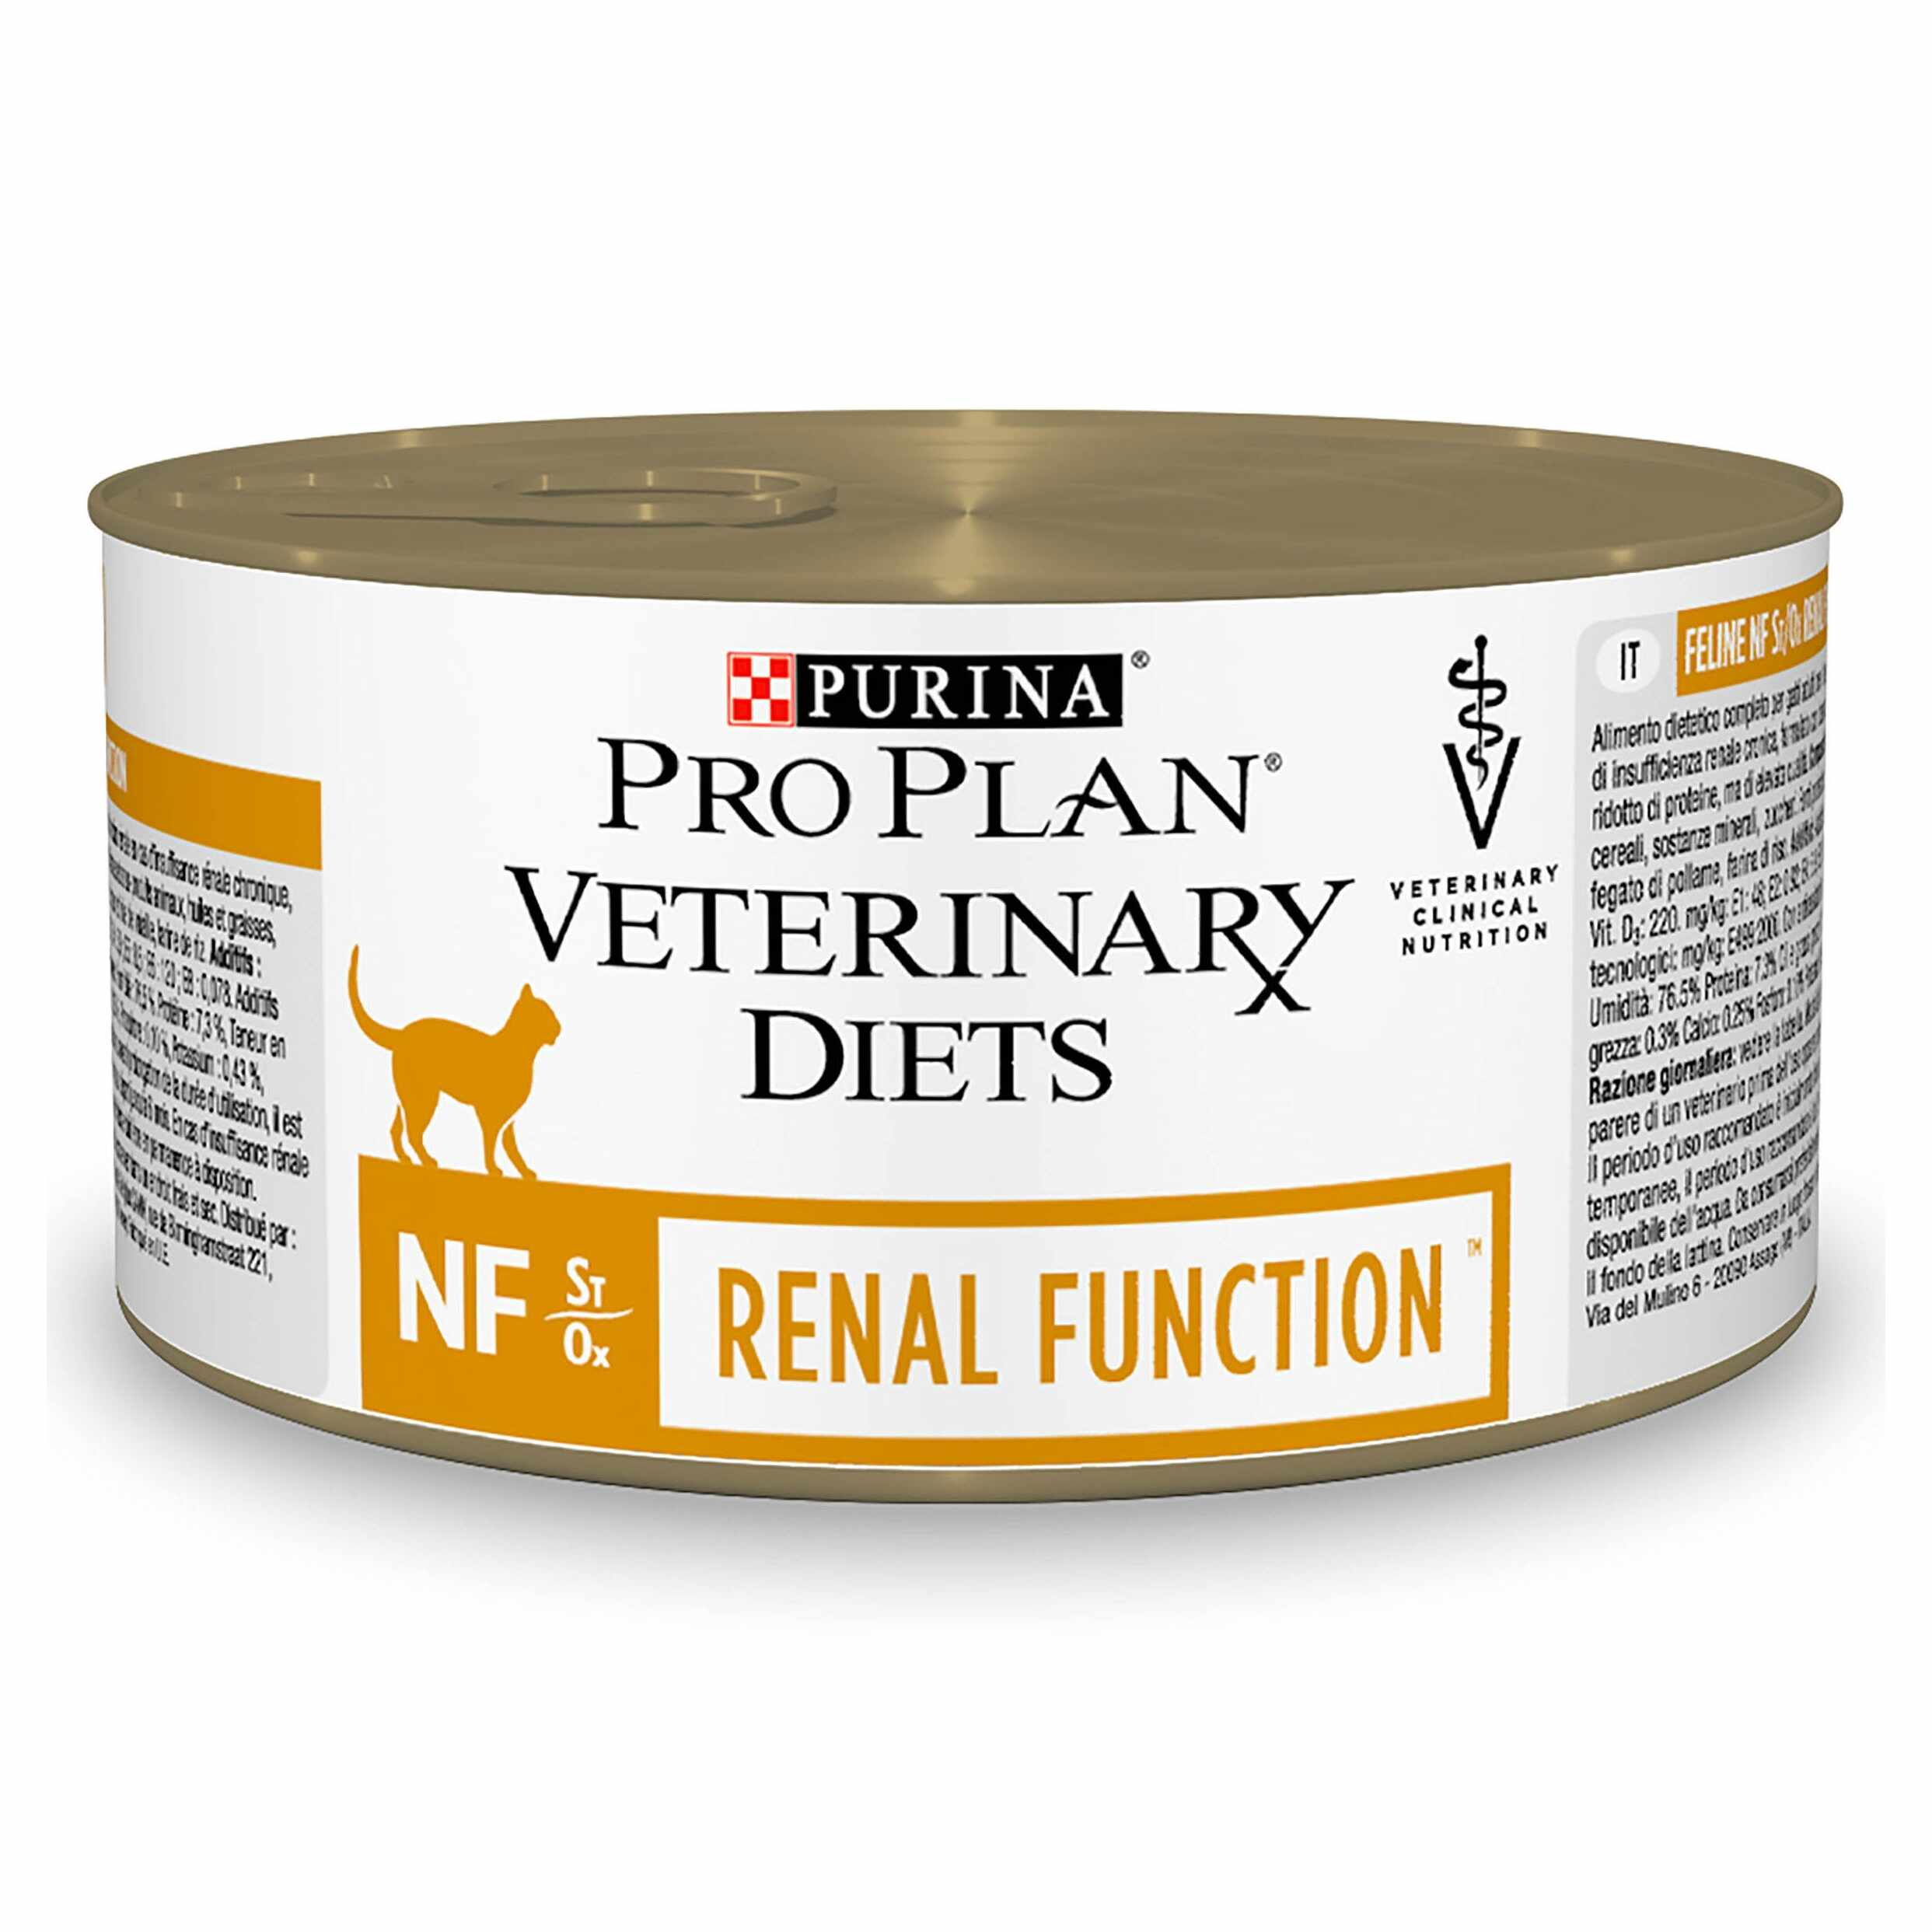 Purina Veterinary Diets Feline NF, Renal Diet, 195 g